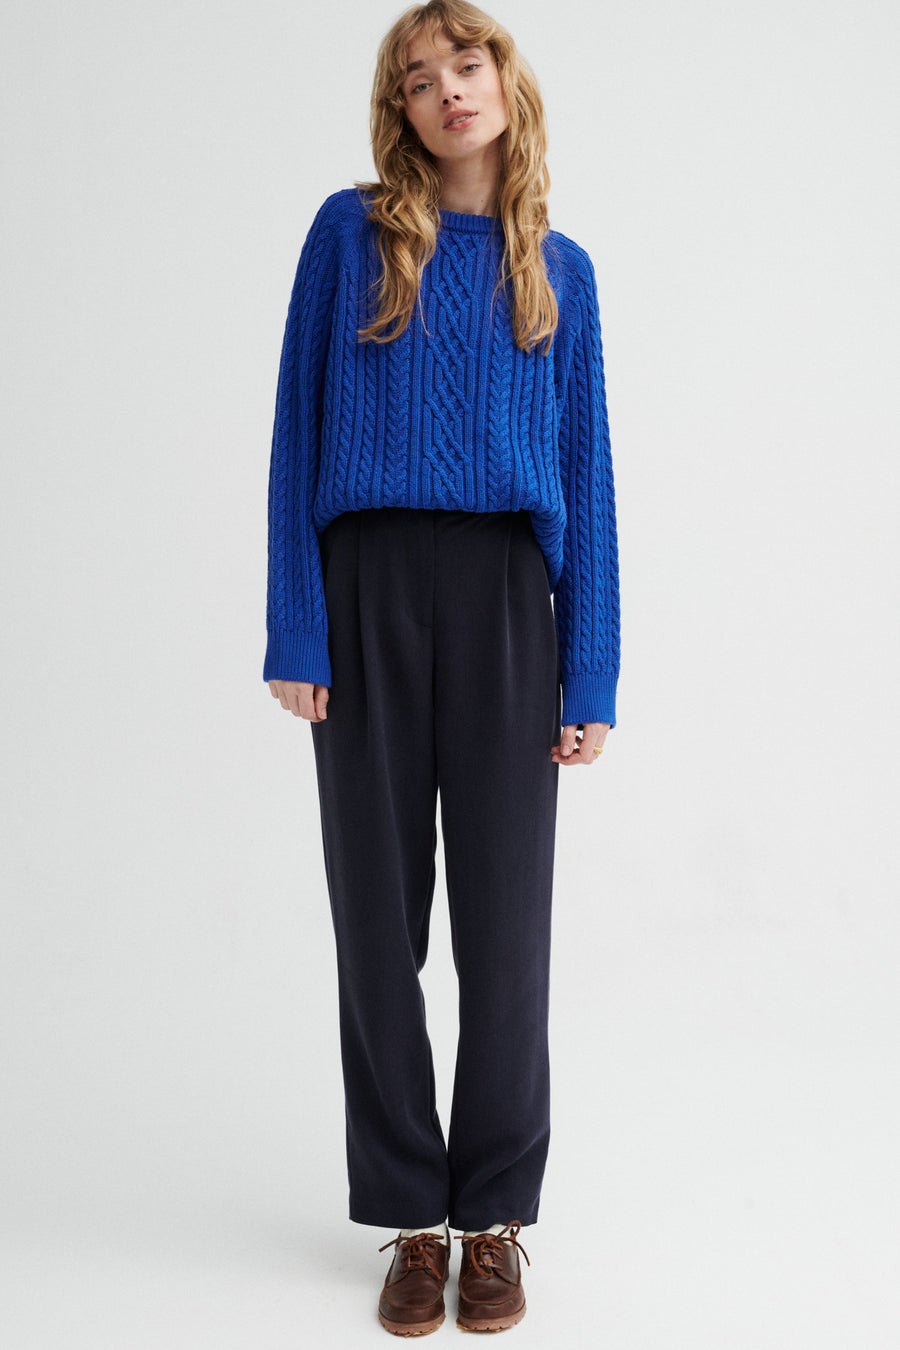 Sweter z bawełny organicznej / 16 / 14 / cobalt blue *spodnie-z-tencelu-05-17-night-blue* ?Modelka ma 179 cm i prezentuje rozmiar M/L?